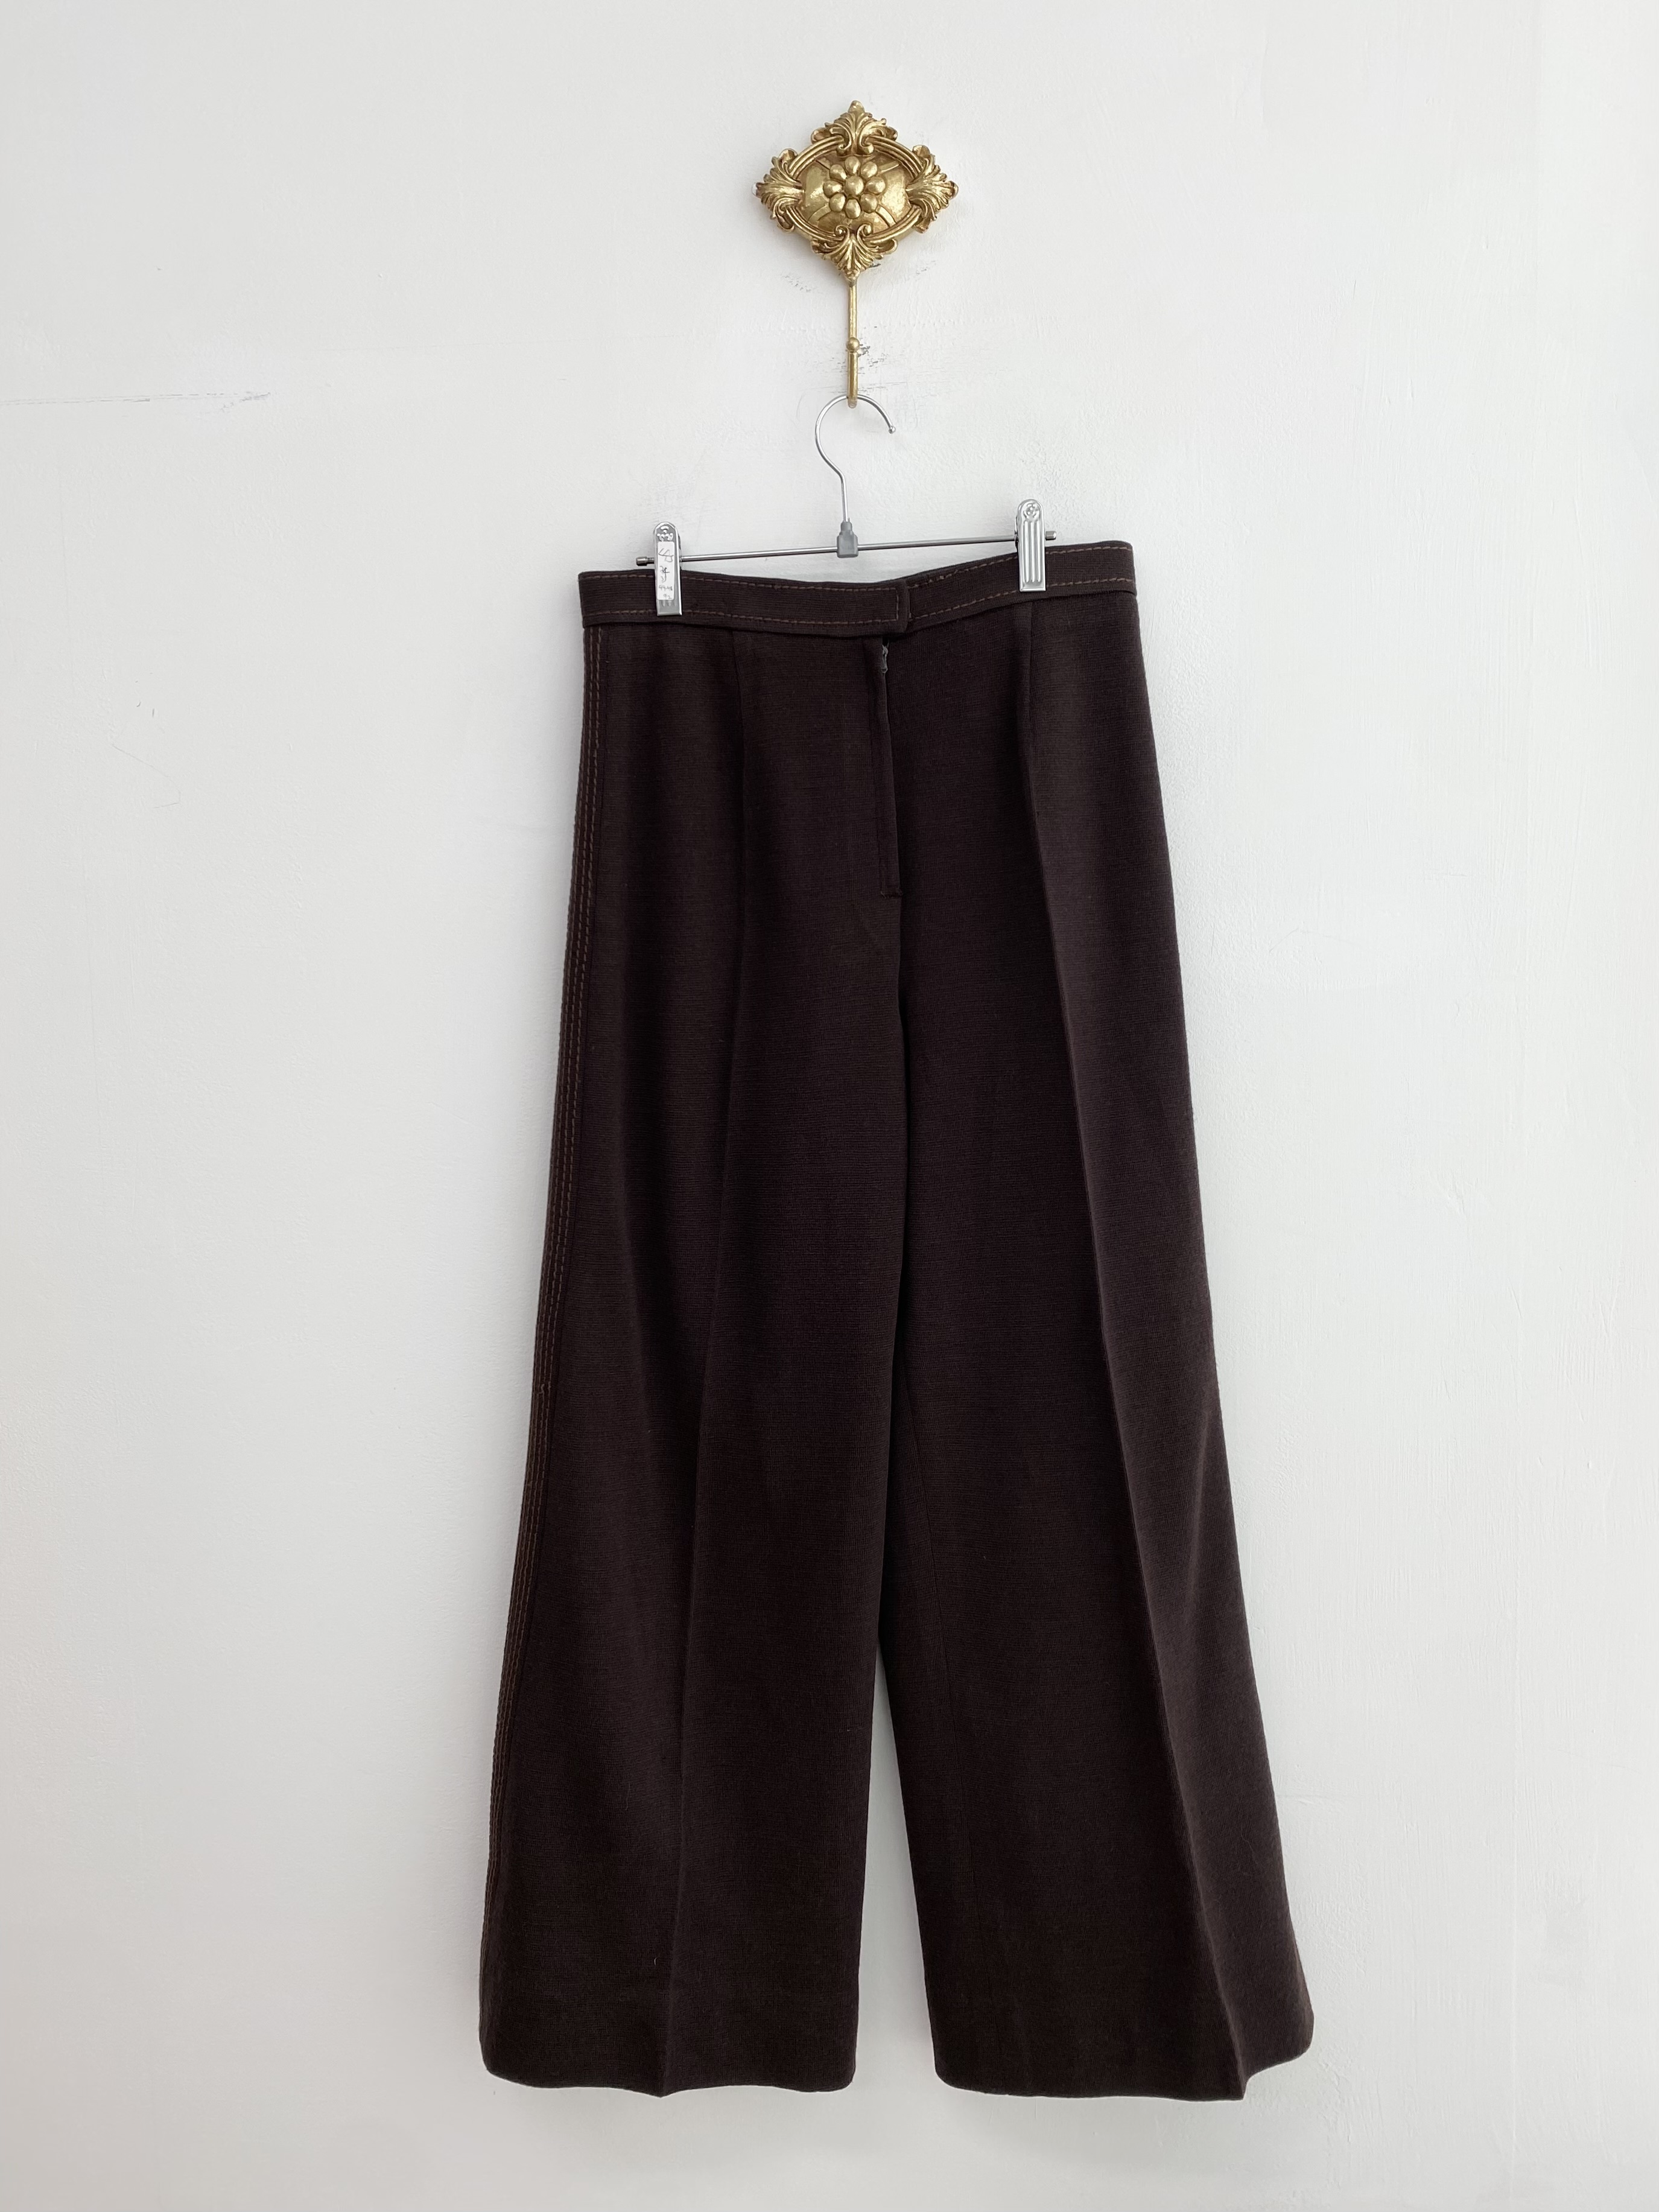 Brown stitch line wool knit long pants